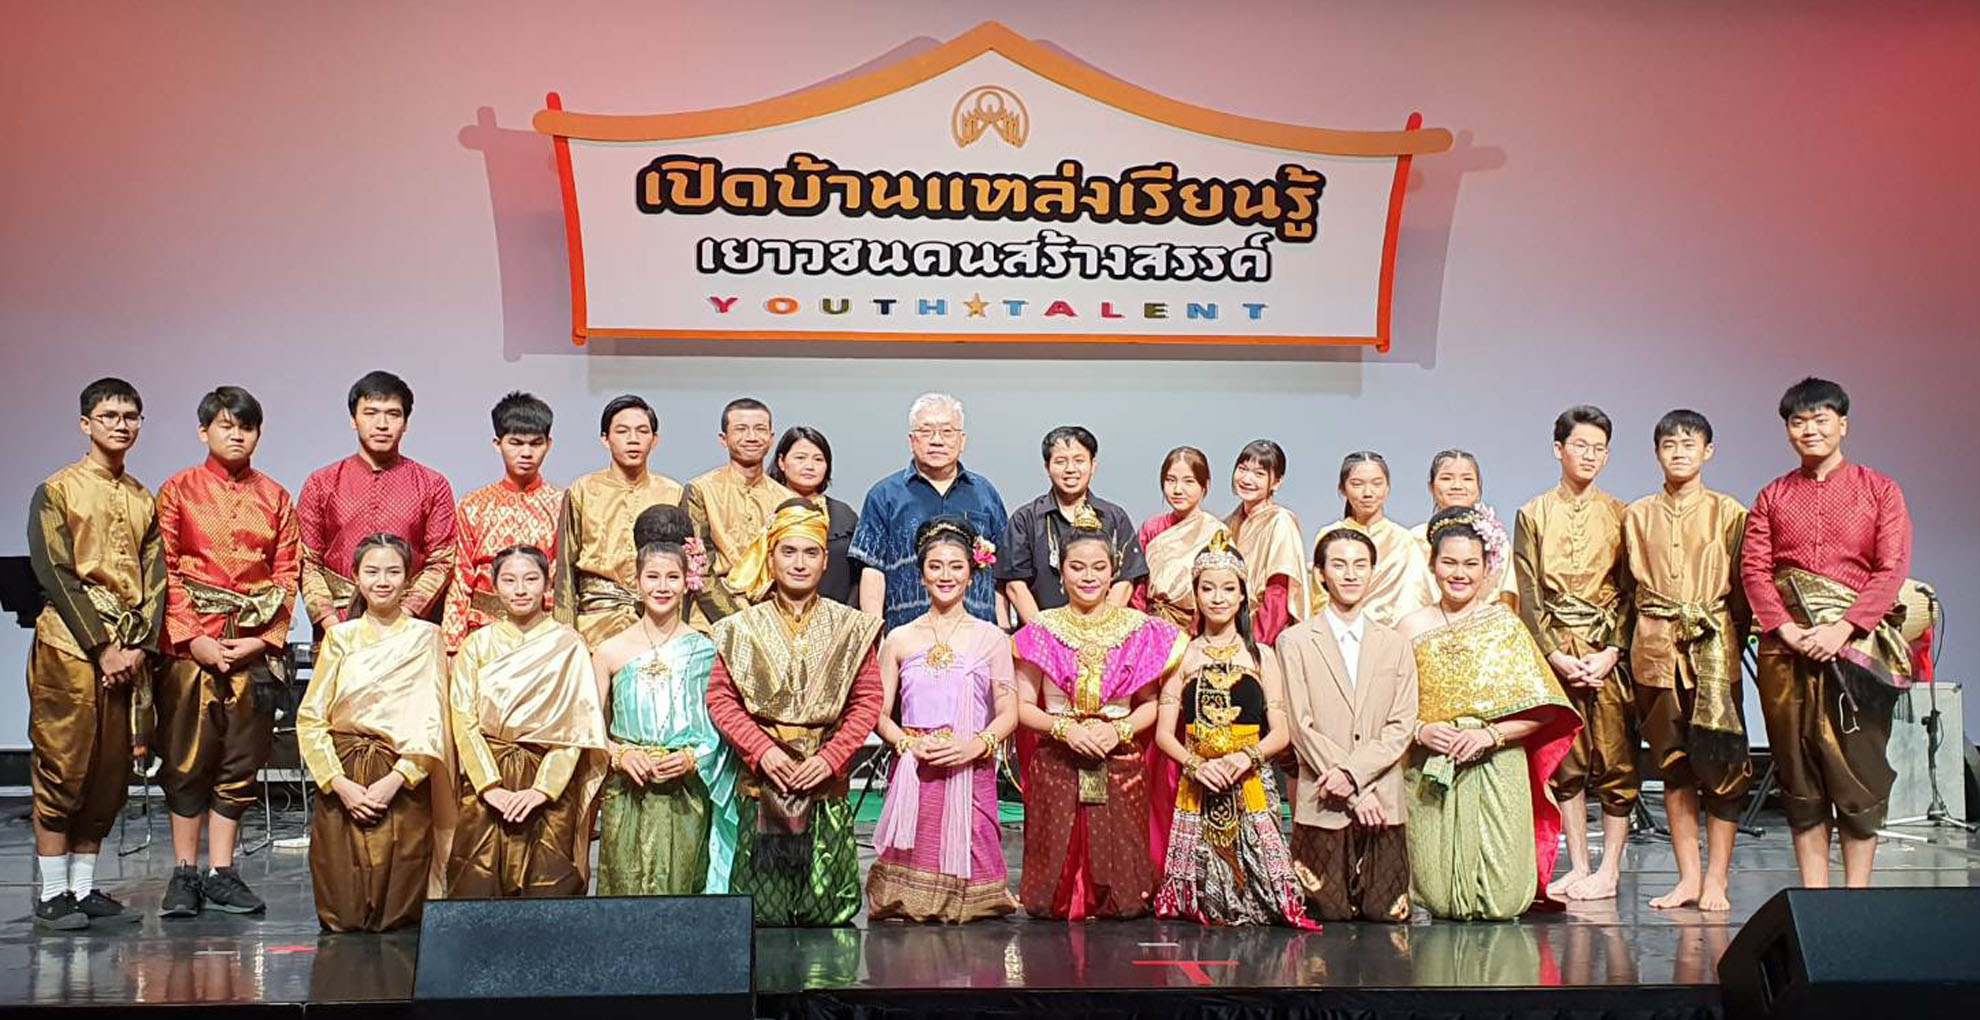 สวธ.ขอเชิญร่วม “สานสุข สืบวัฒนธรรม นำวิถีใหม่” กิจกรรมเปิดบ้านแหล่งเรียนรู้ศูนย์วัฒนธรรมแห่งประเทศไทย